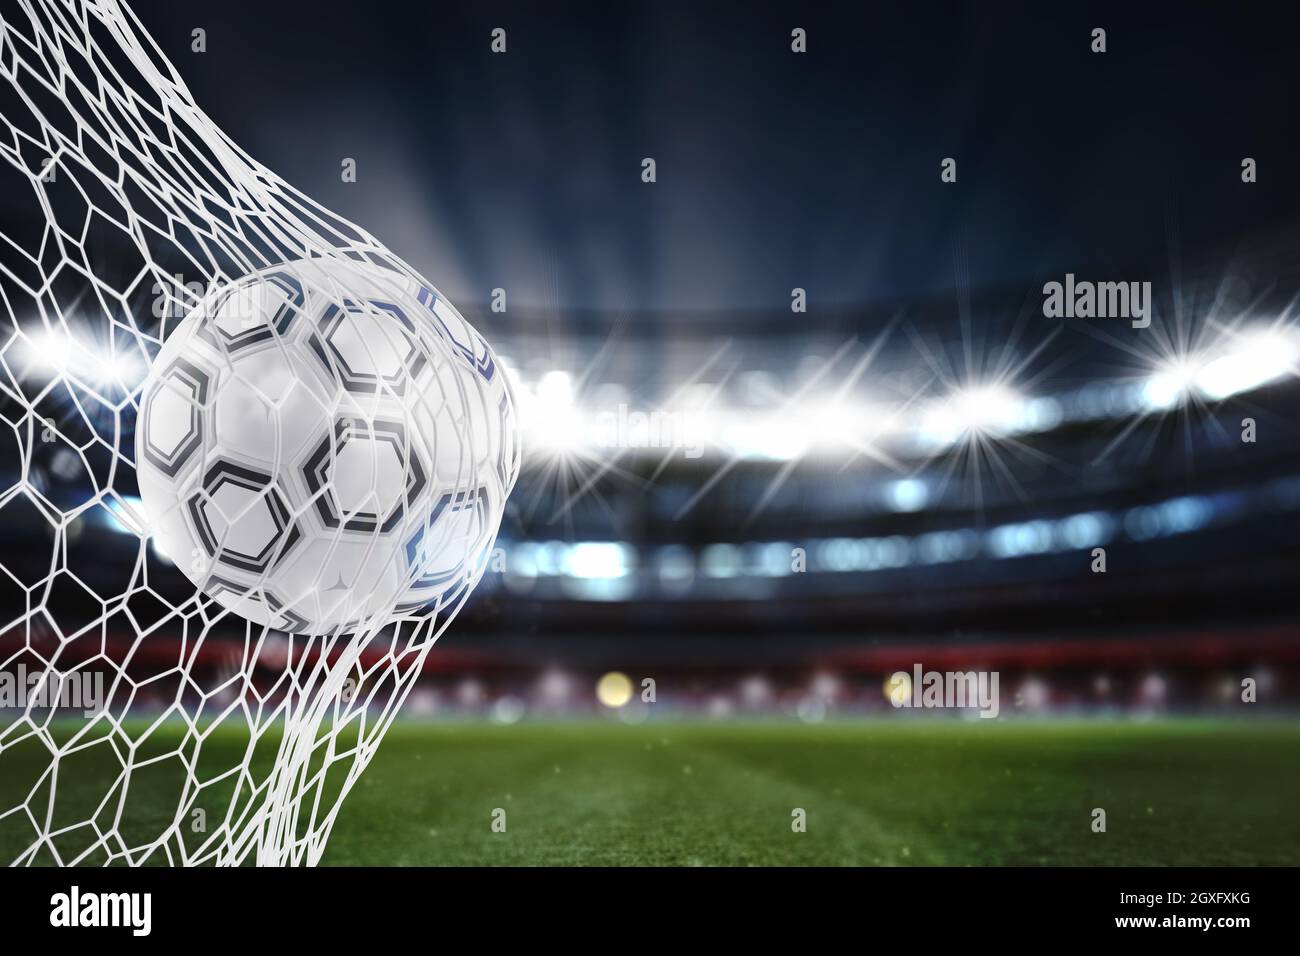 Fußball durchdringt die Fußball-Ziel im Stadion während einer Nacht übereinstimmen. 3D-Rendering Stockfoto